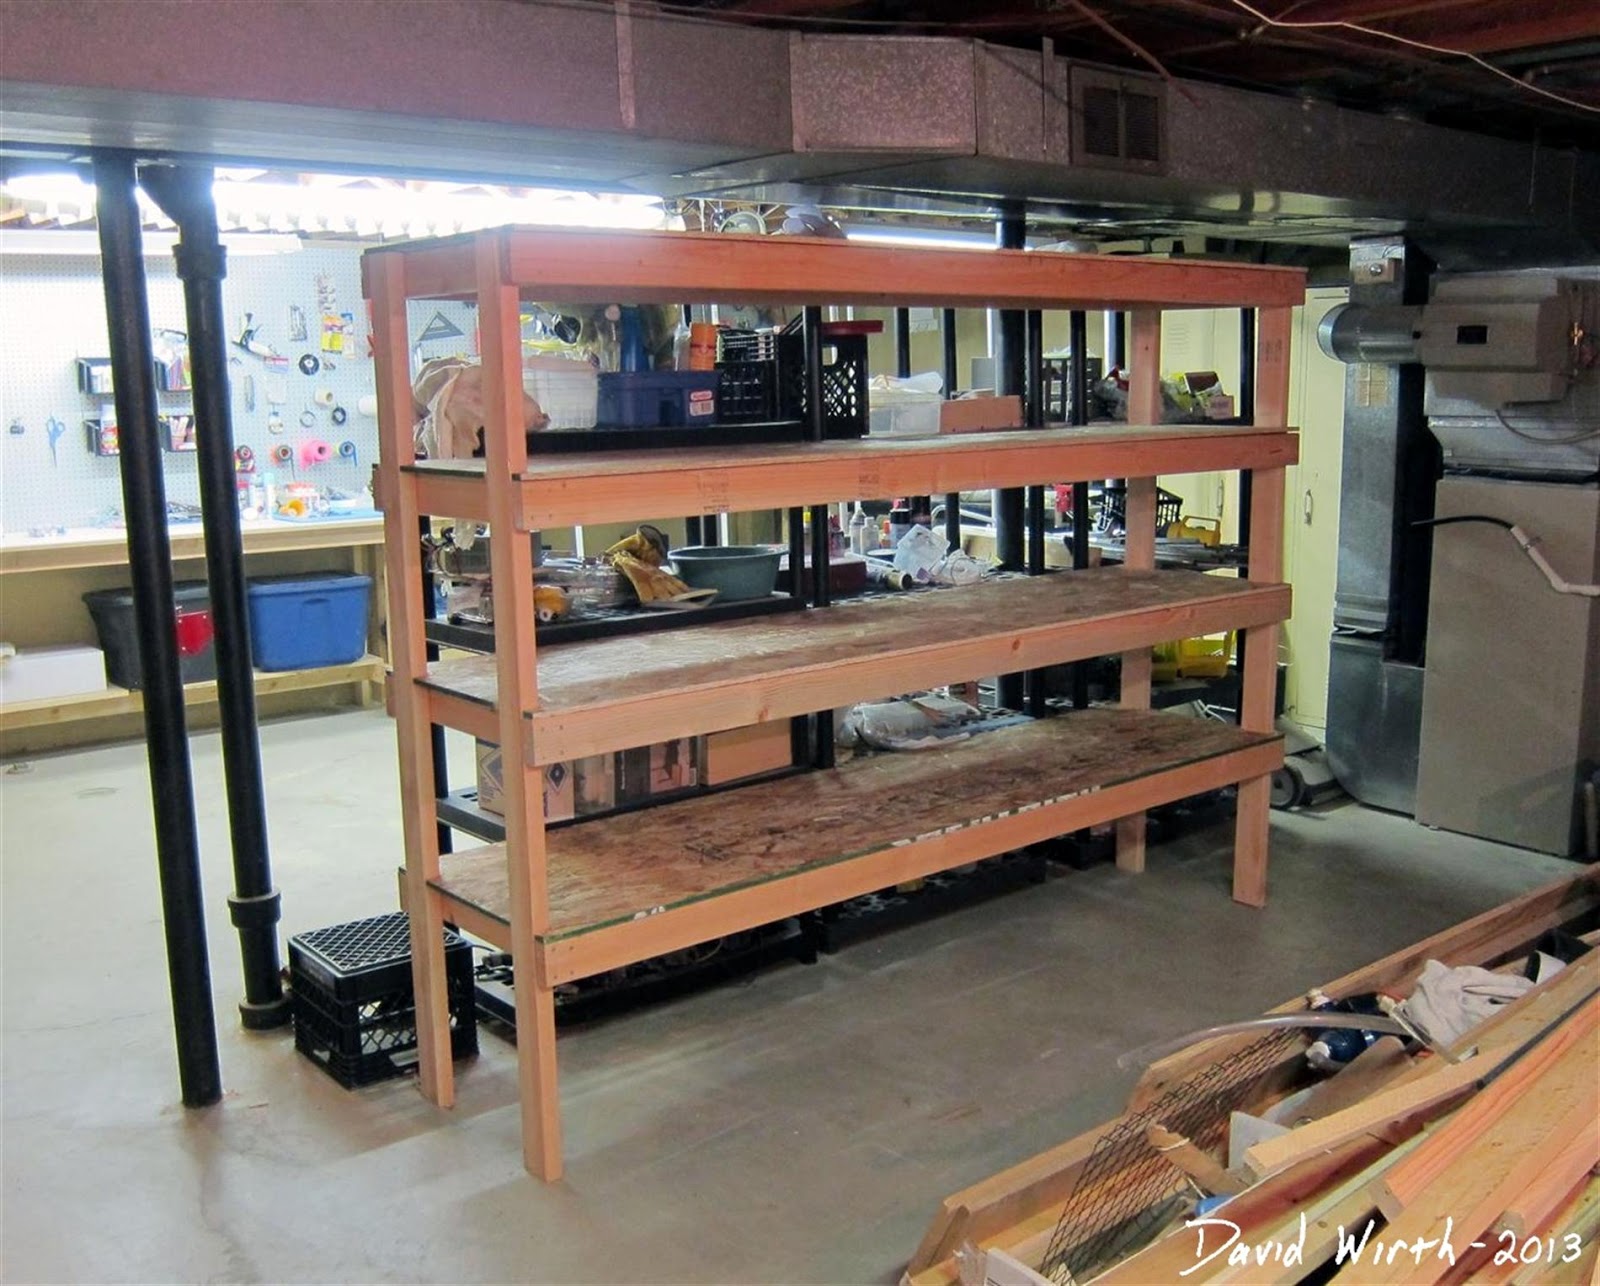  shelf, storage, organize, how to make, wood shelf, build, plans